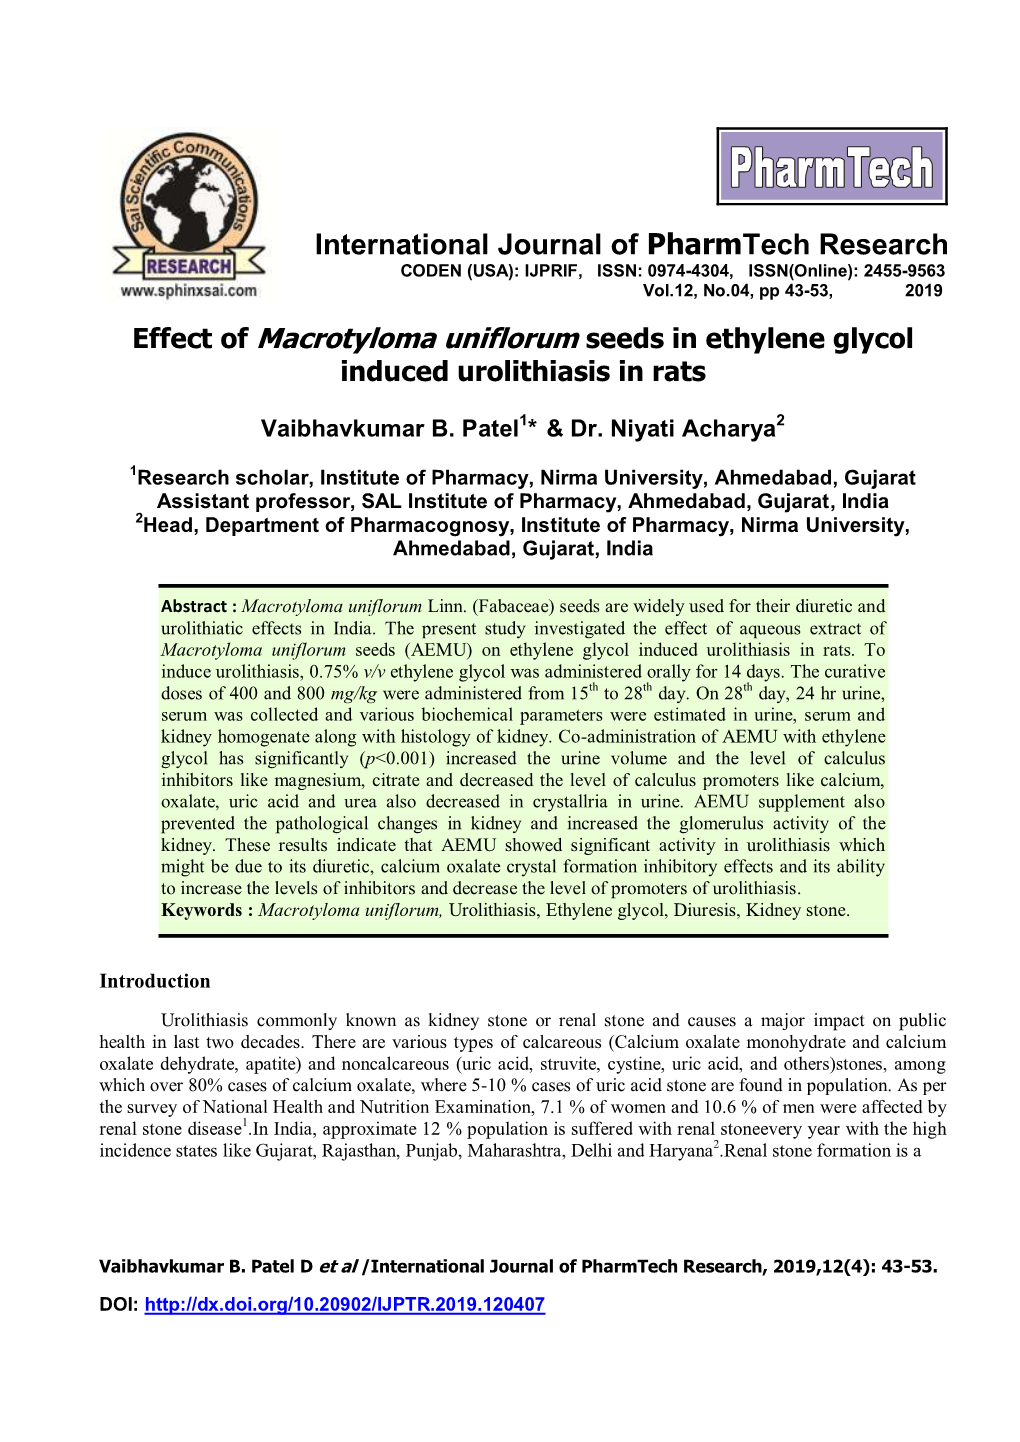 International Journal of Pharmtech Research CODEN (USA): IJPRIF, ISSN: 0974-4304, ISSN(Online): 2455-9563 Vol.12, No.04, Pp 43-53, 2019